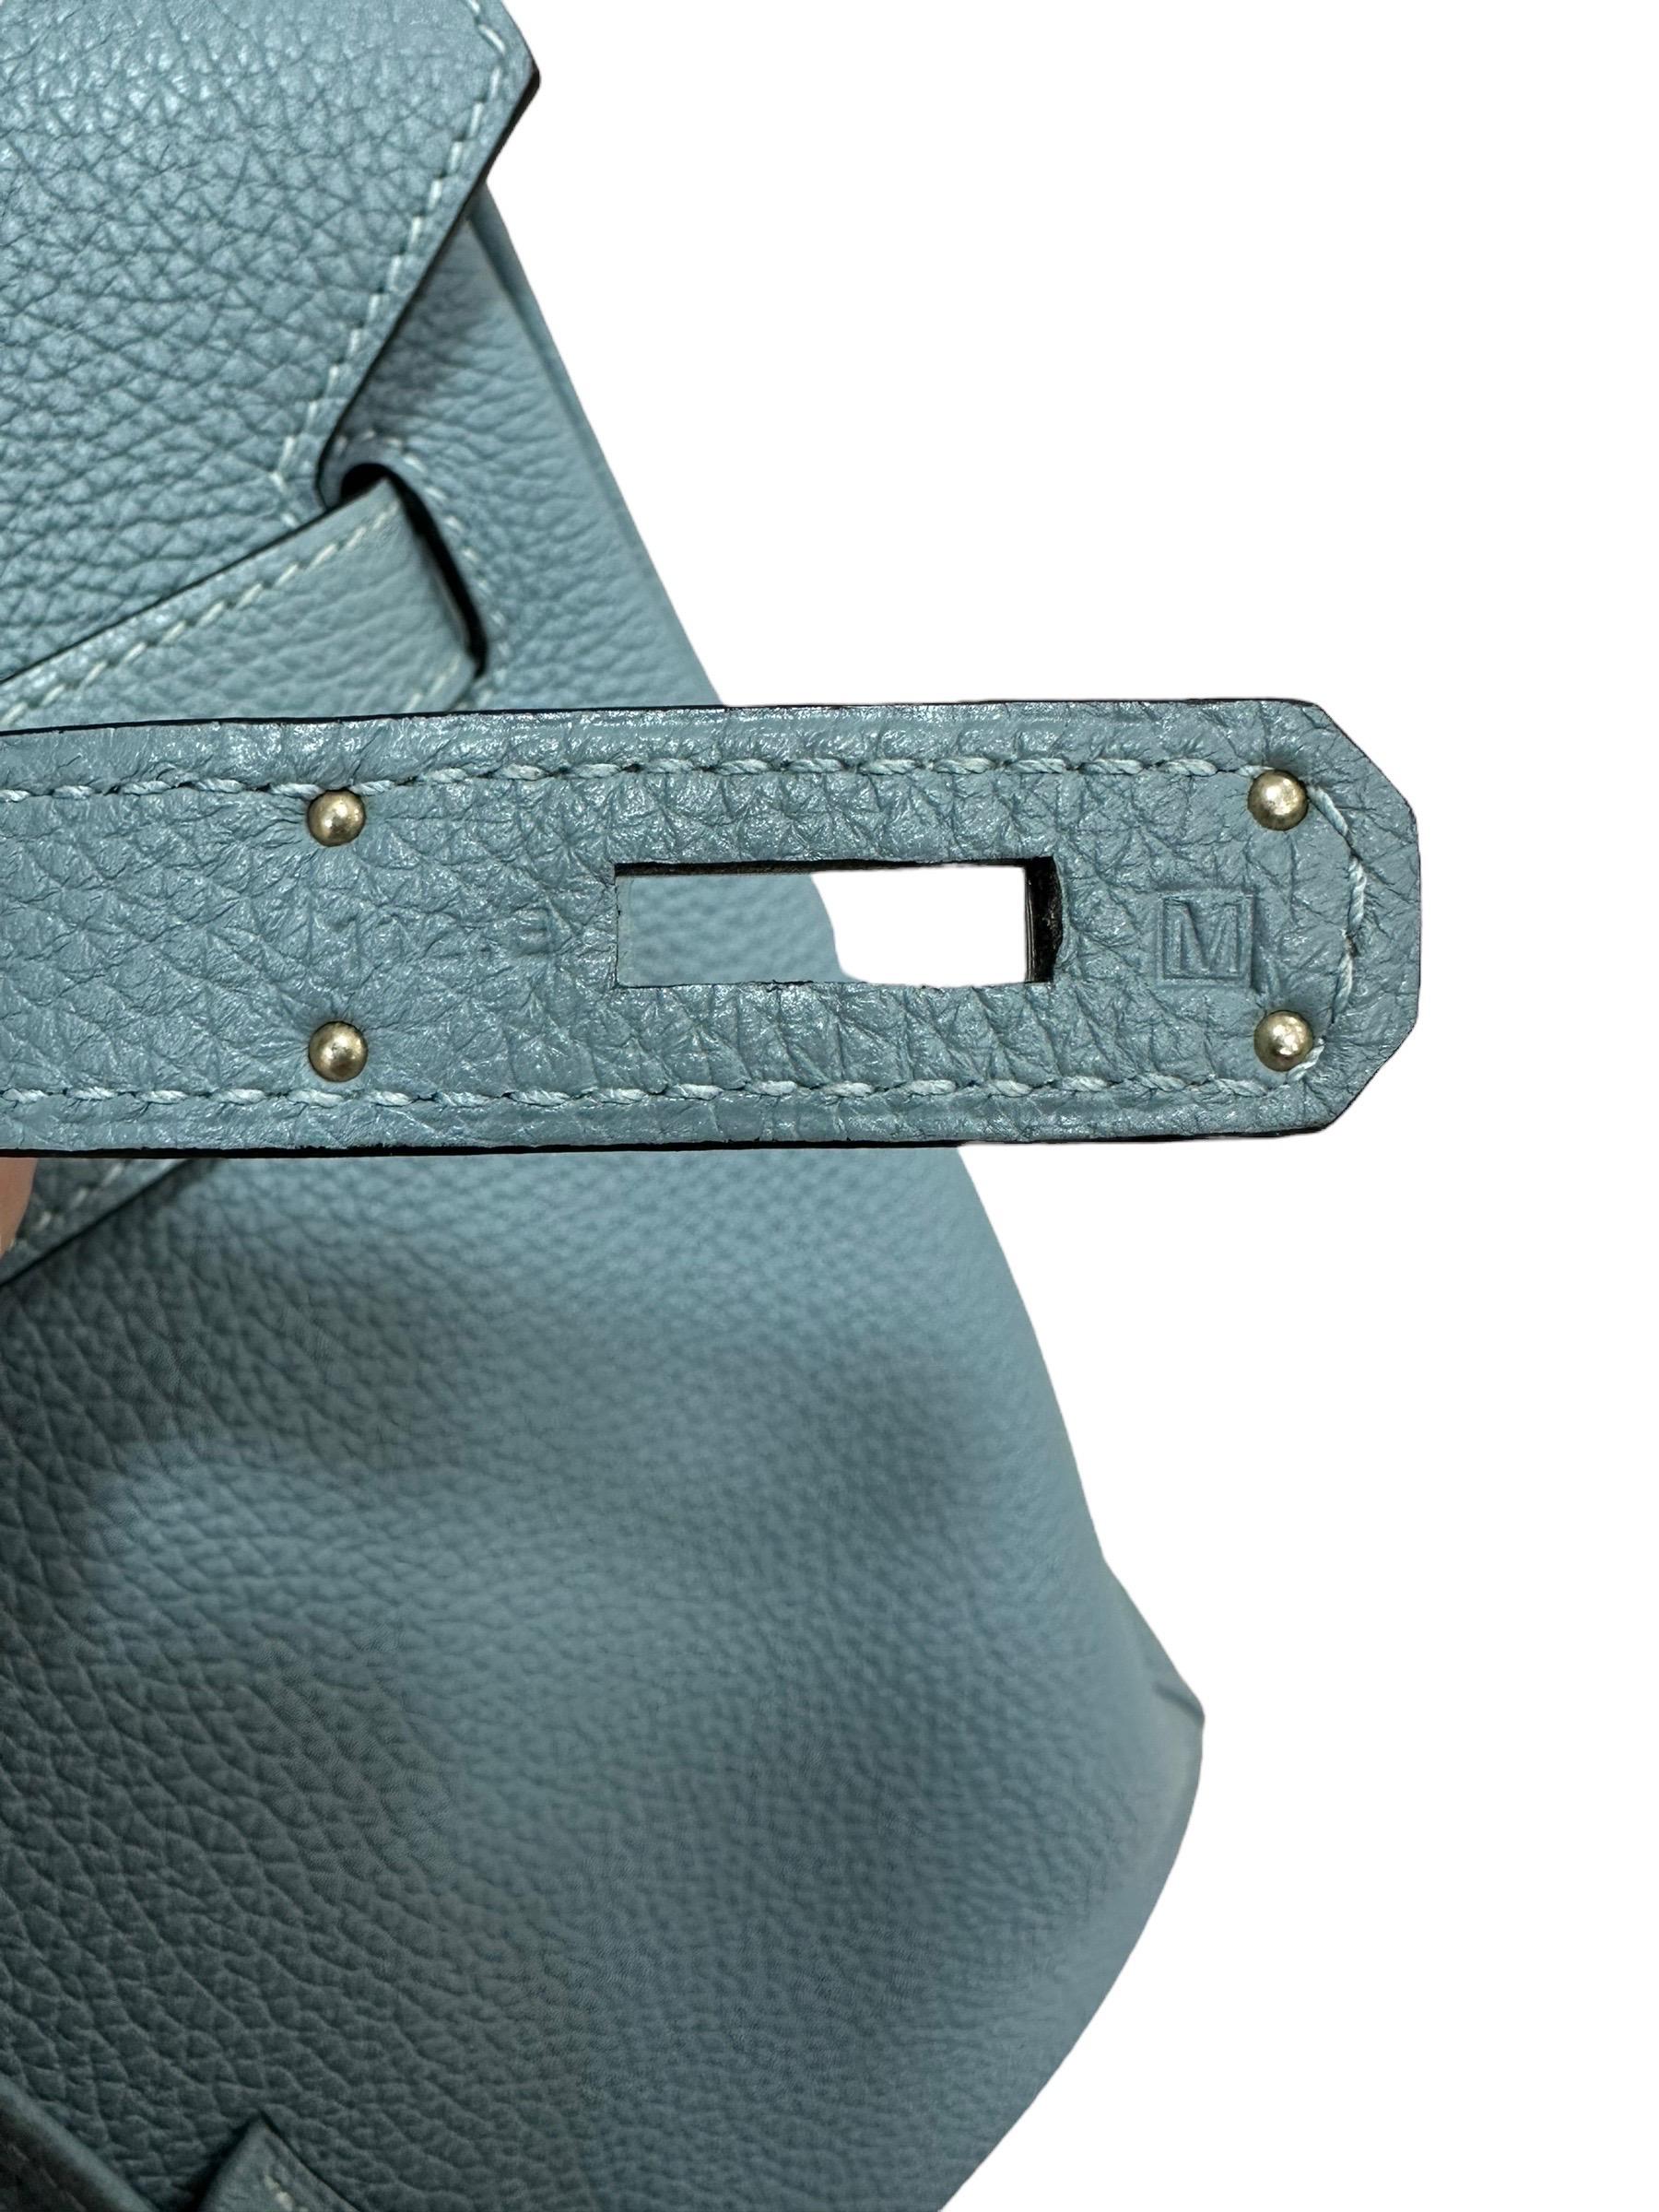 2009 Hermès Birkin 35 Togo Leather Ciel Top Handle Bag For Sale 12